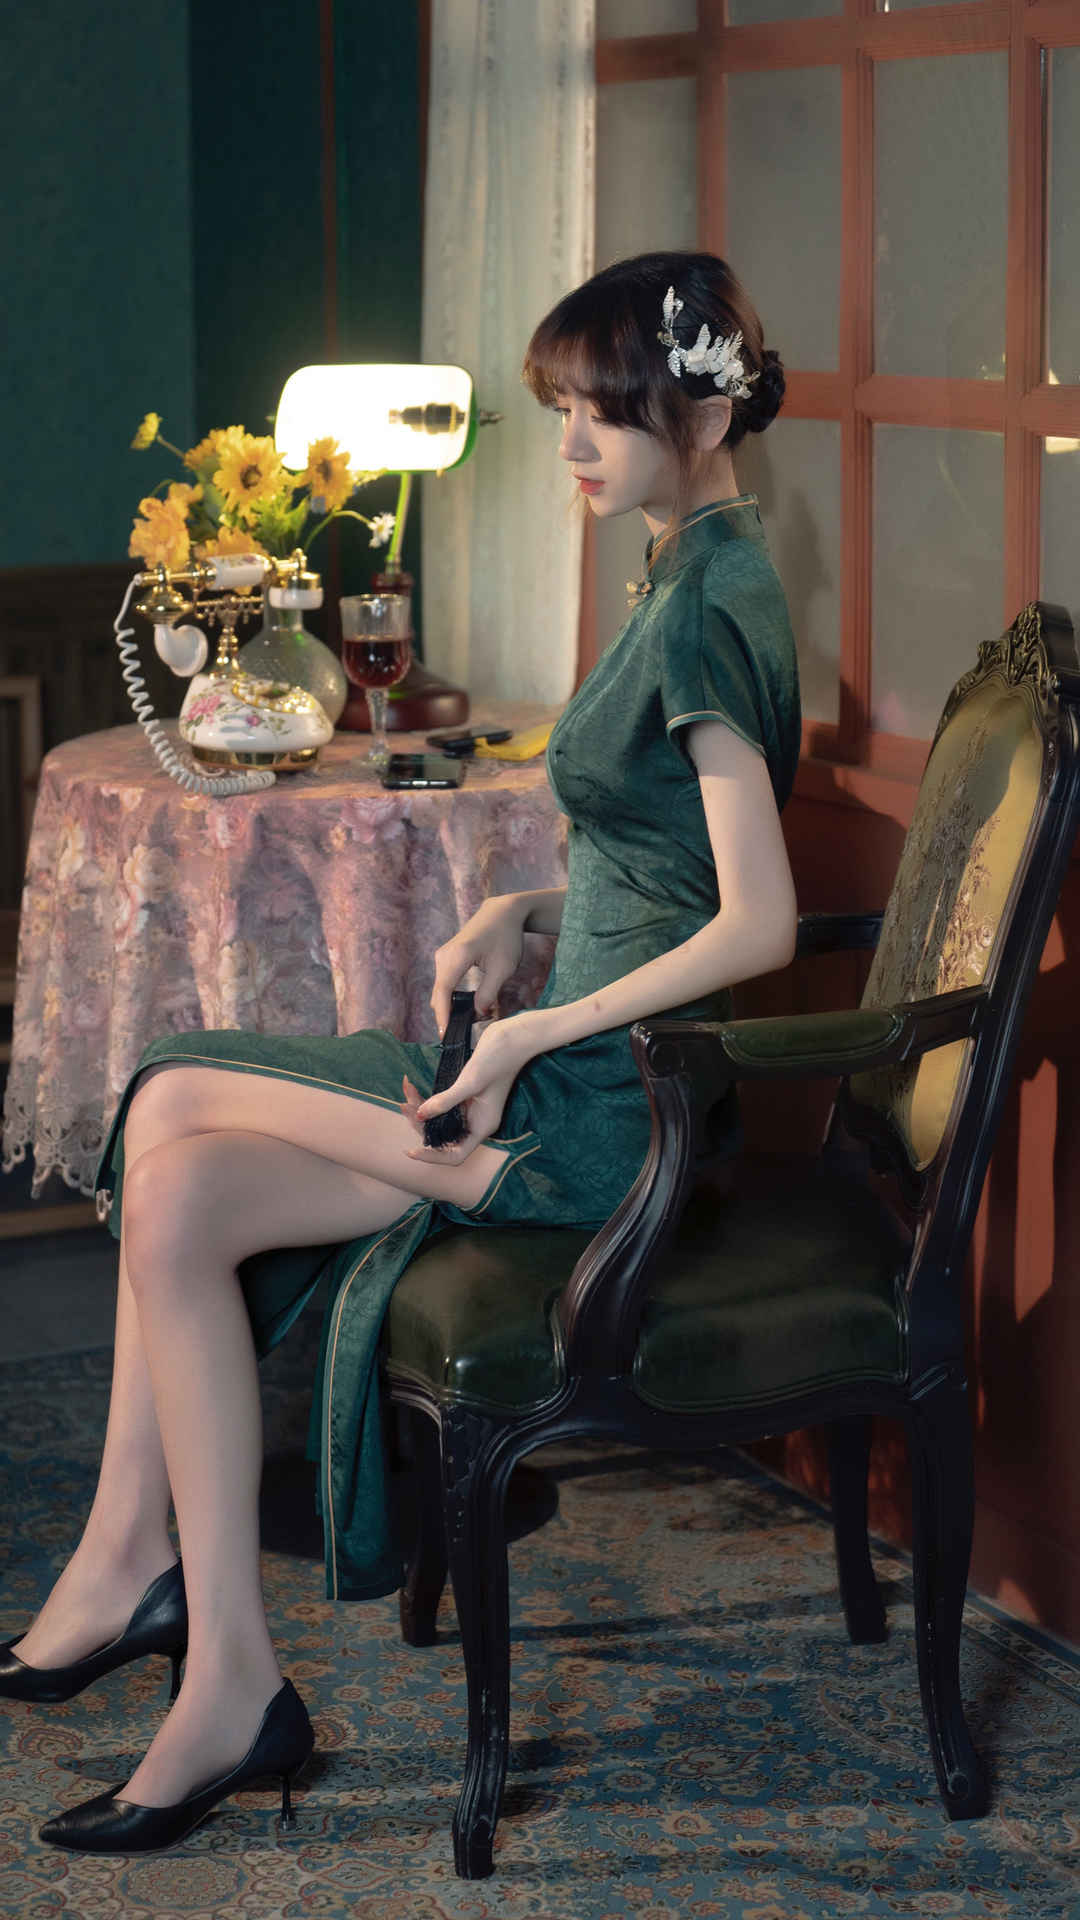 绿色旗袍长腿美女藤原由纪写真